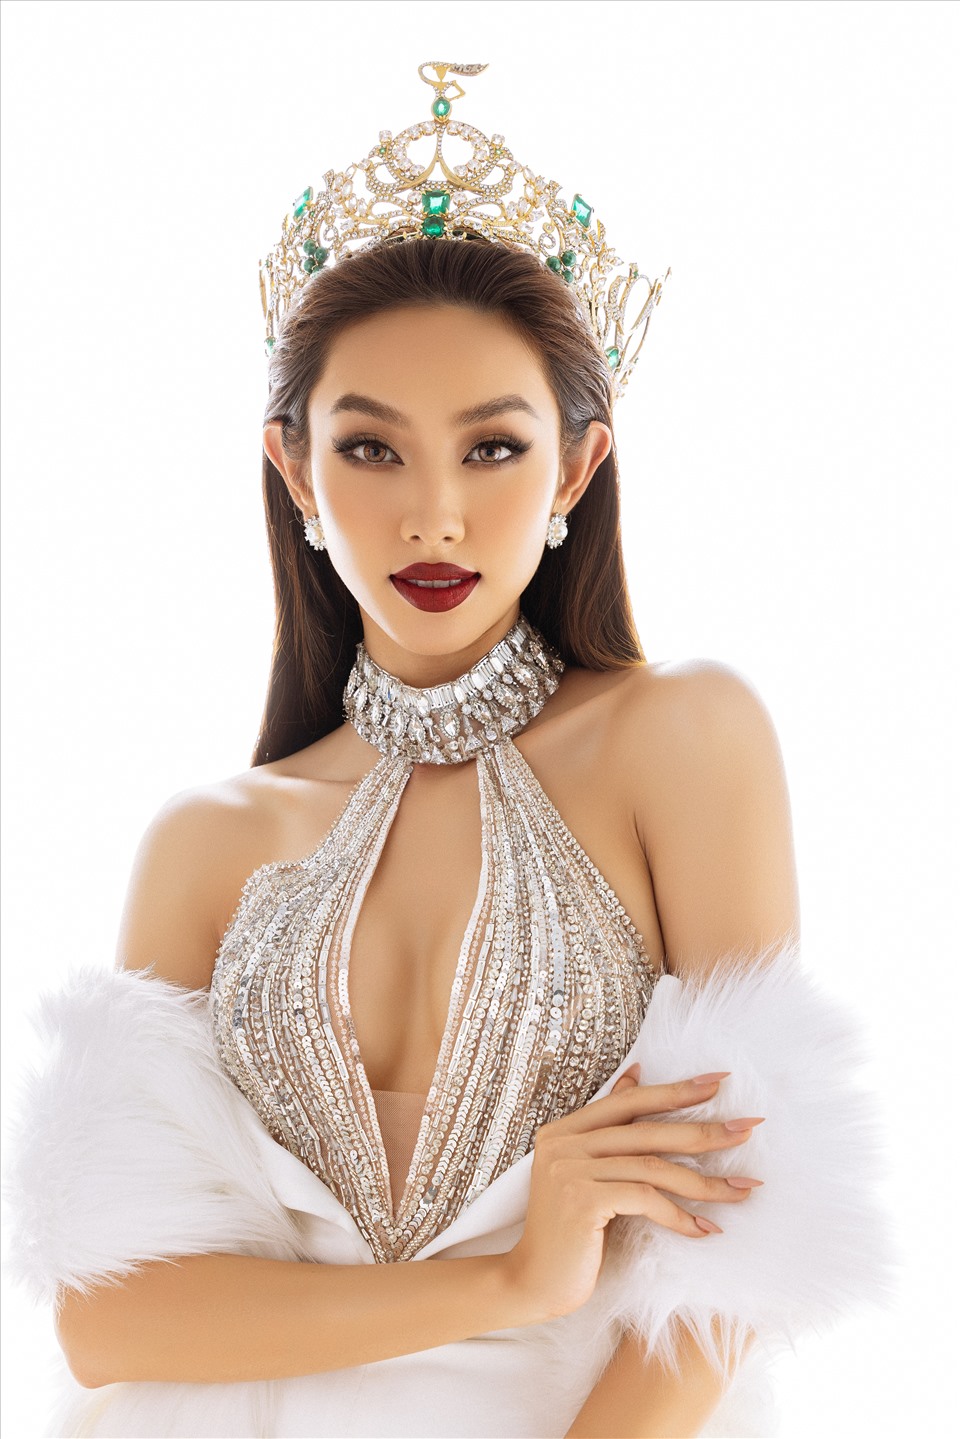 Sắp tới, cô nàng sẽ tiếp tục đồng hành cùng cuộc thi Miss Grand Vietnam 2022 - Hoa hậu Hòa bình Việt Nam nhằm tìm kiếm ra cô gái kế nhiệm mình mang sash Việt Nam đến với đấu trường quốc tế Miss Grand International.